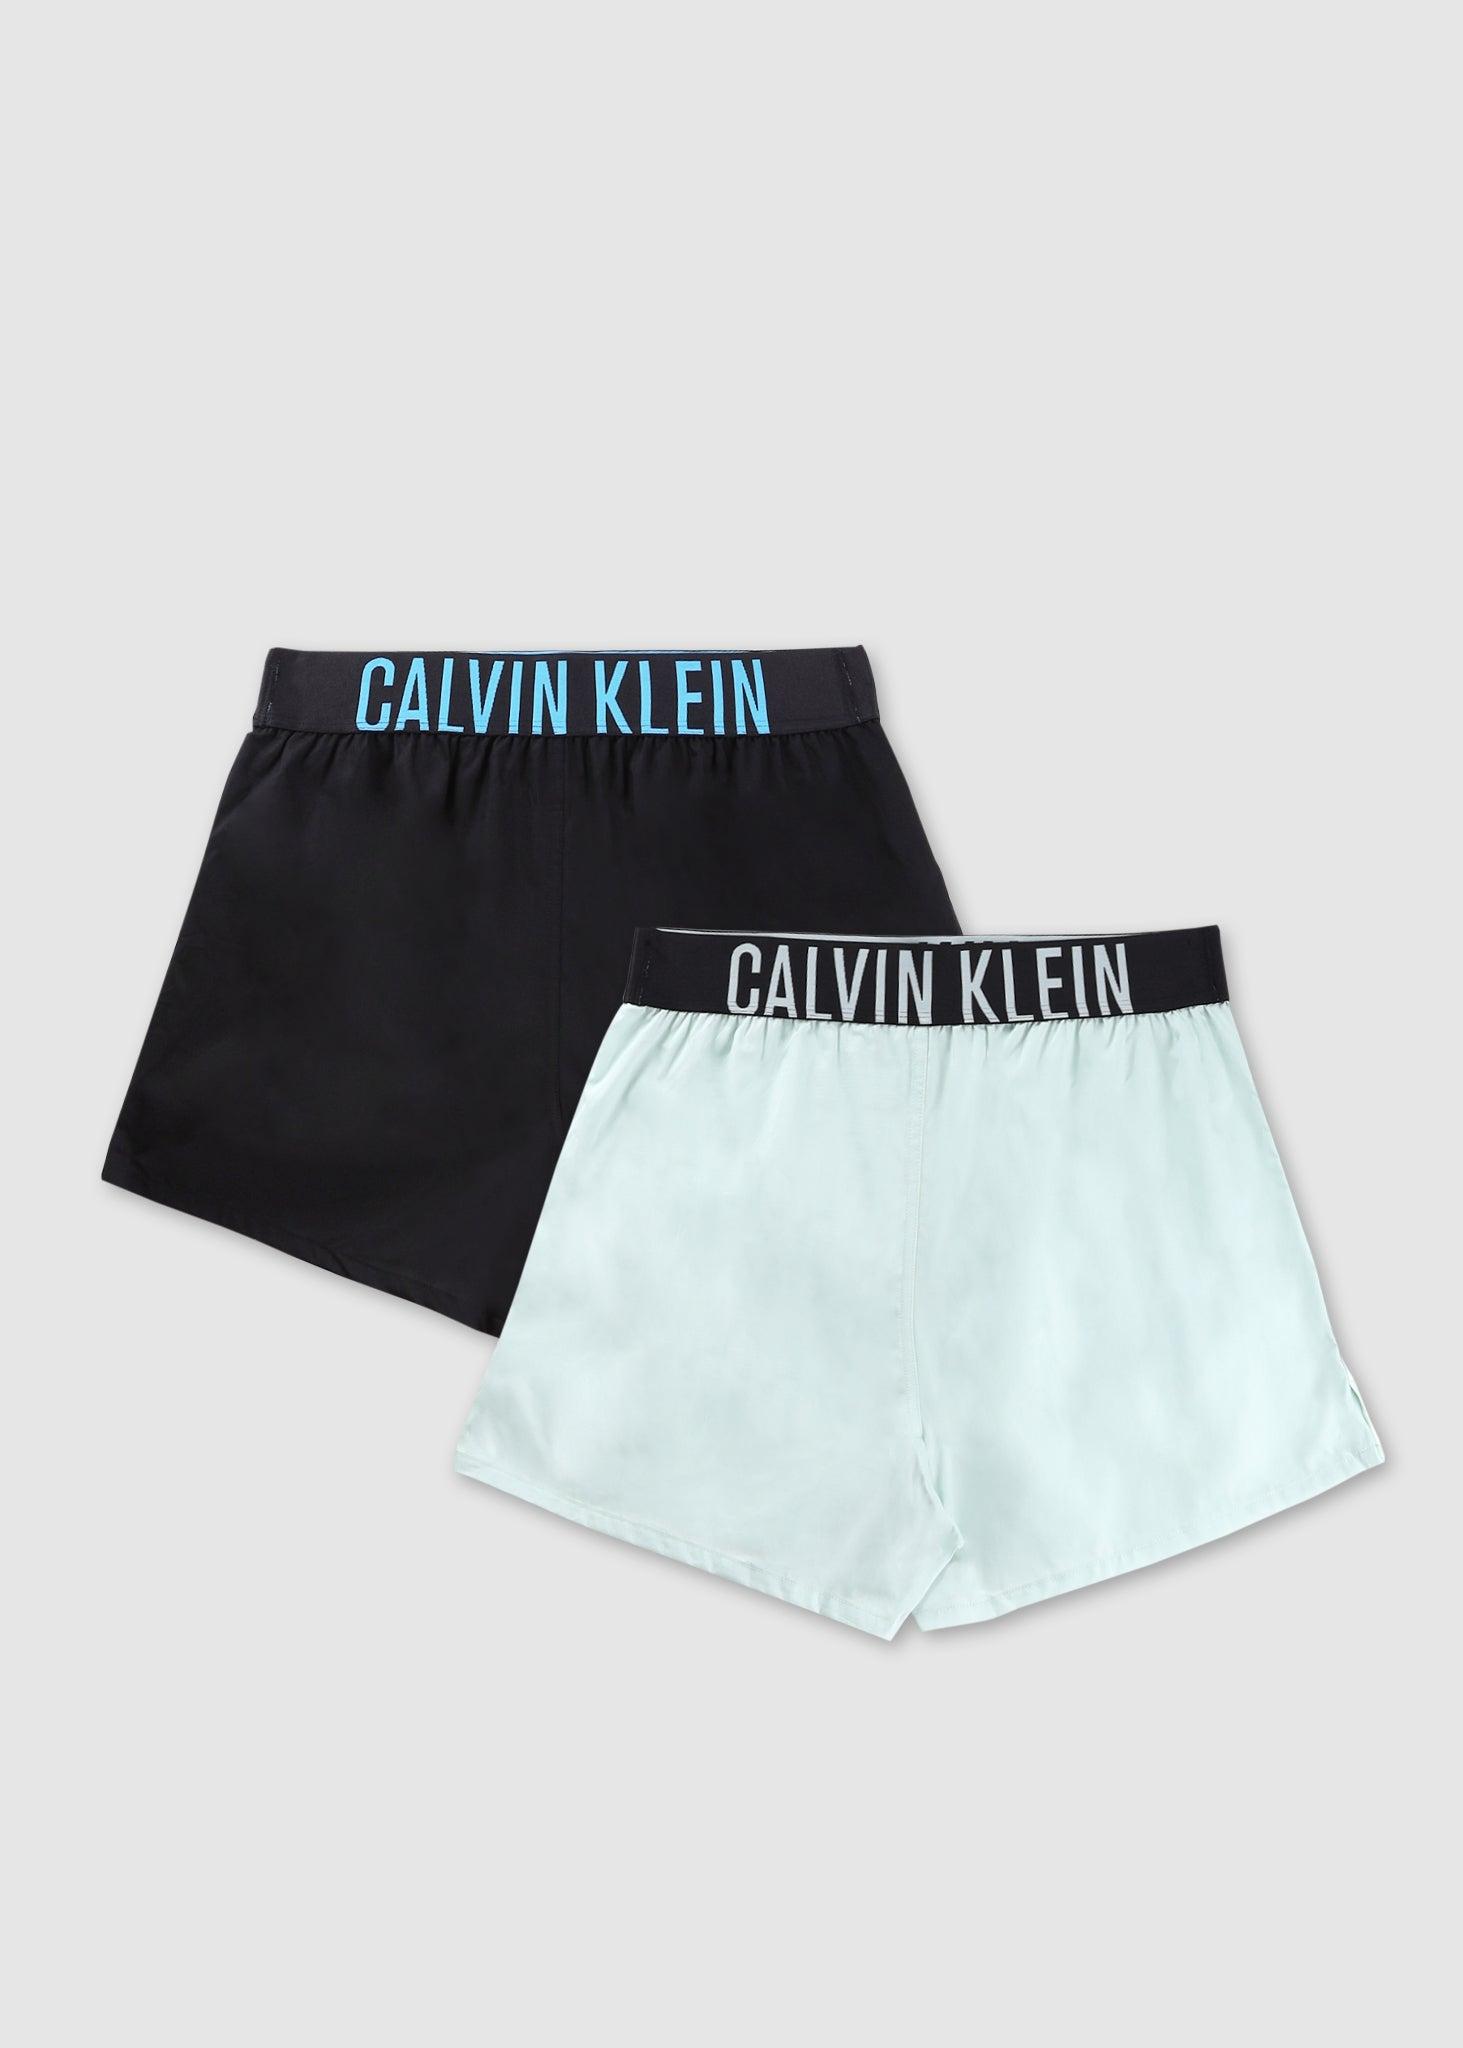 Calvin Klein 2 Pack Trunks